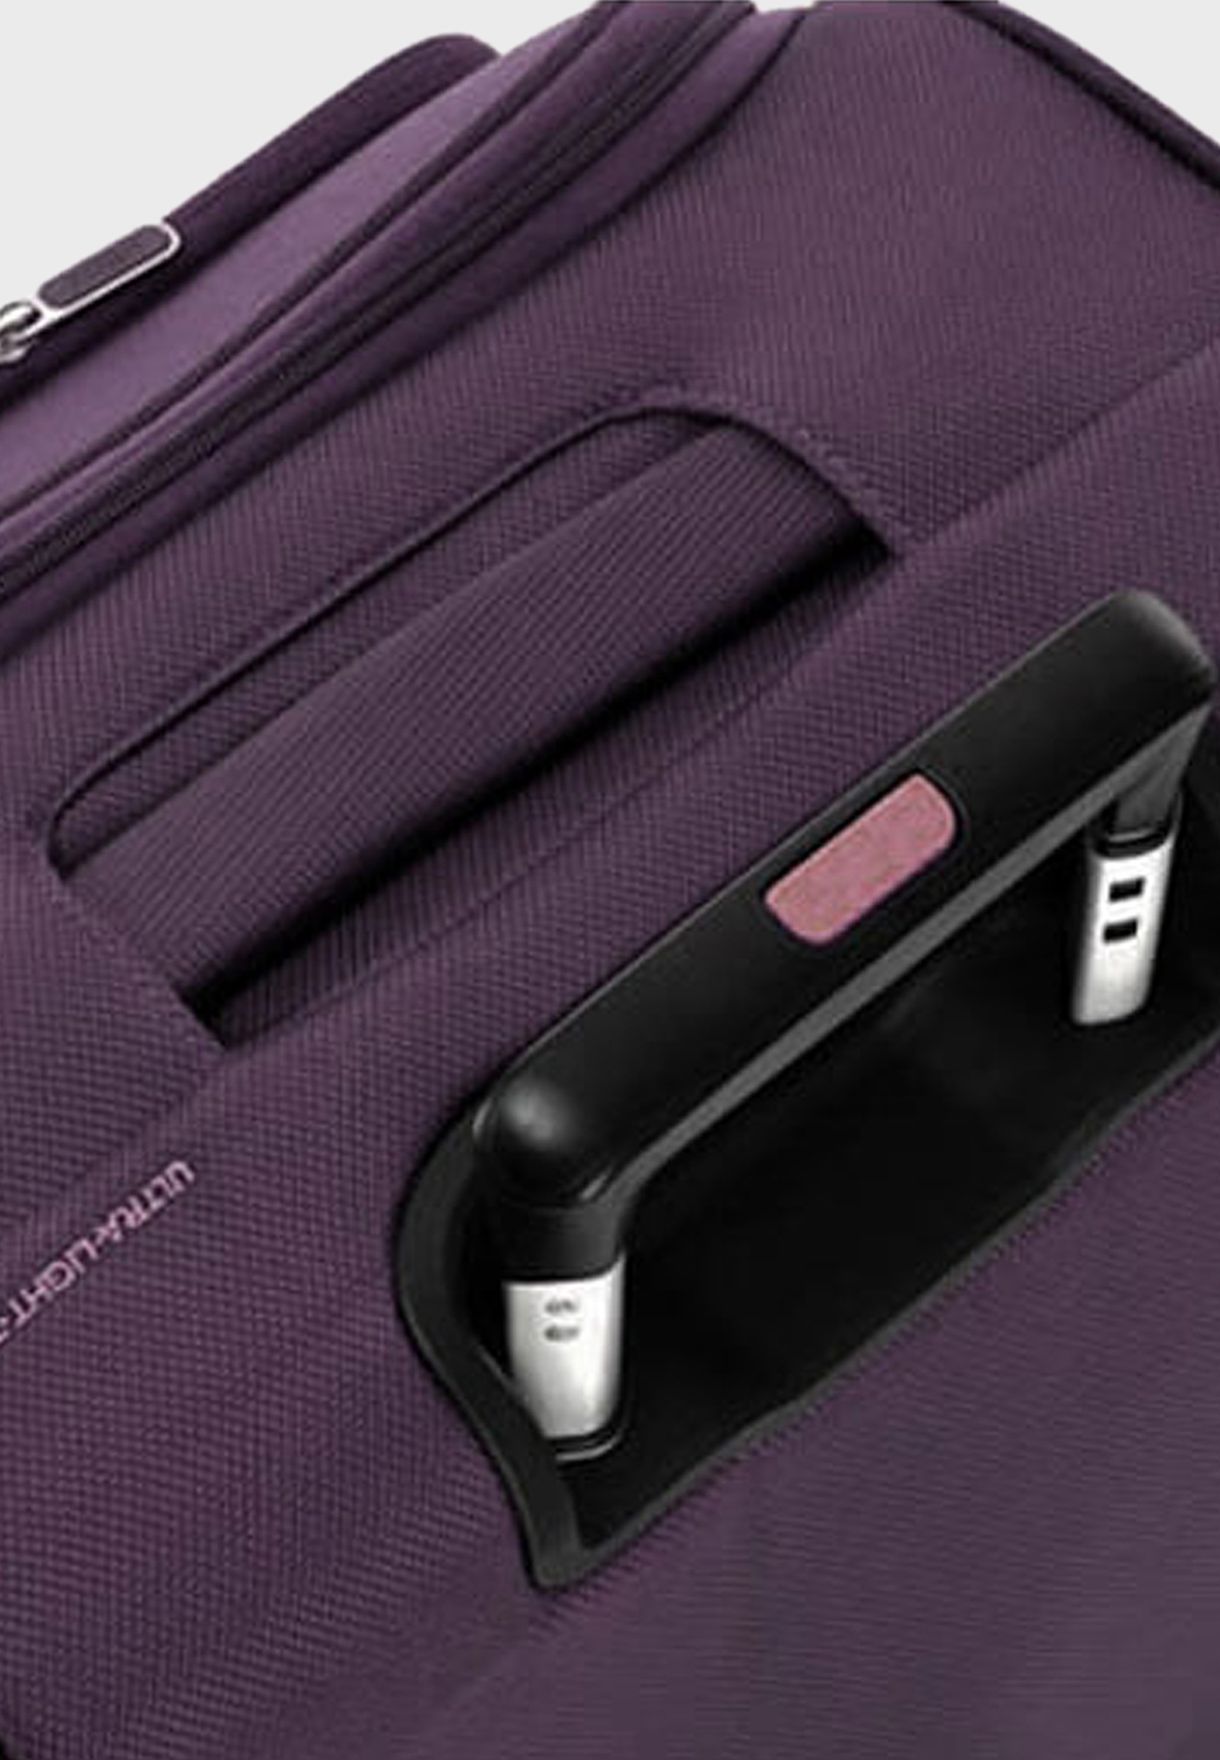 Maxwell 68 Cm Medium Soft Suitcase